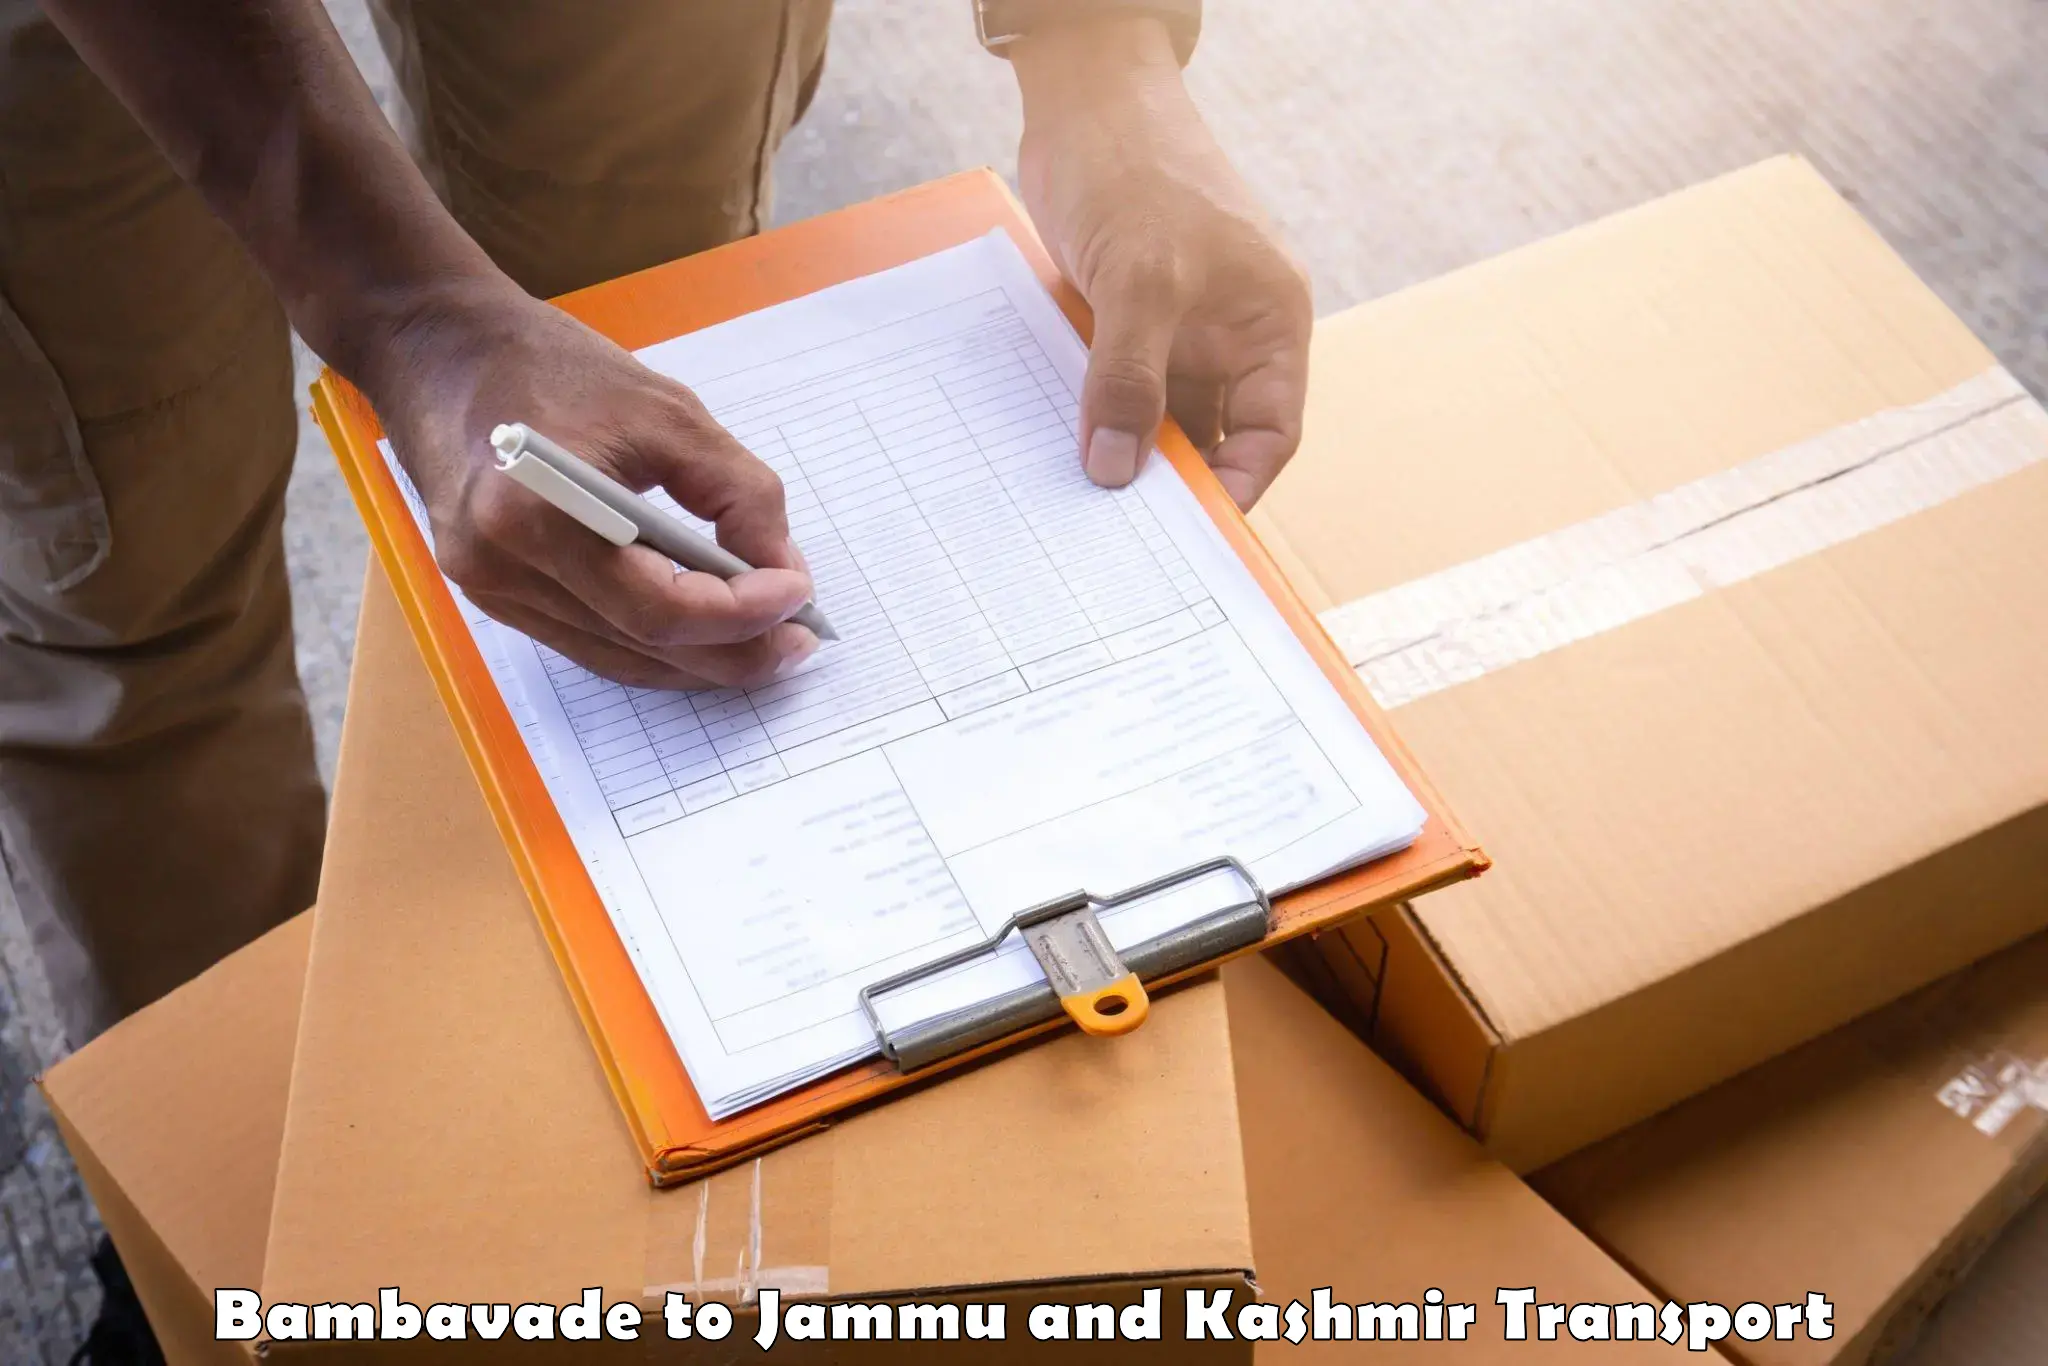 Commercial transport service Bambavade to Srinagar Kashmir